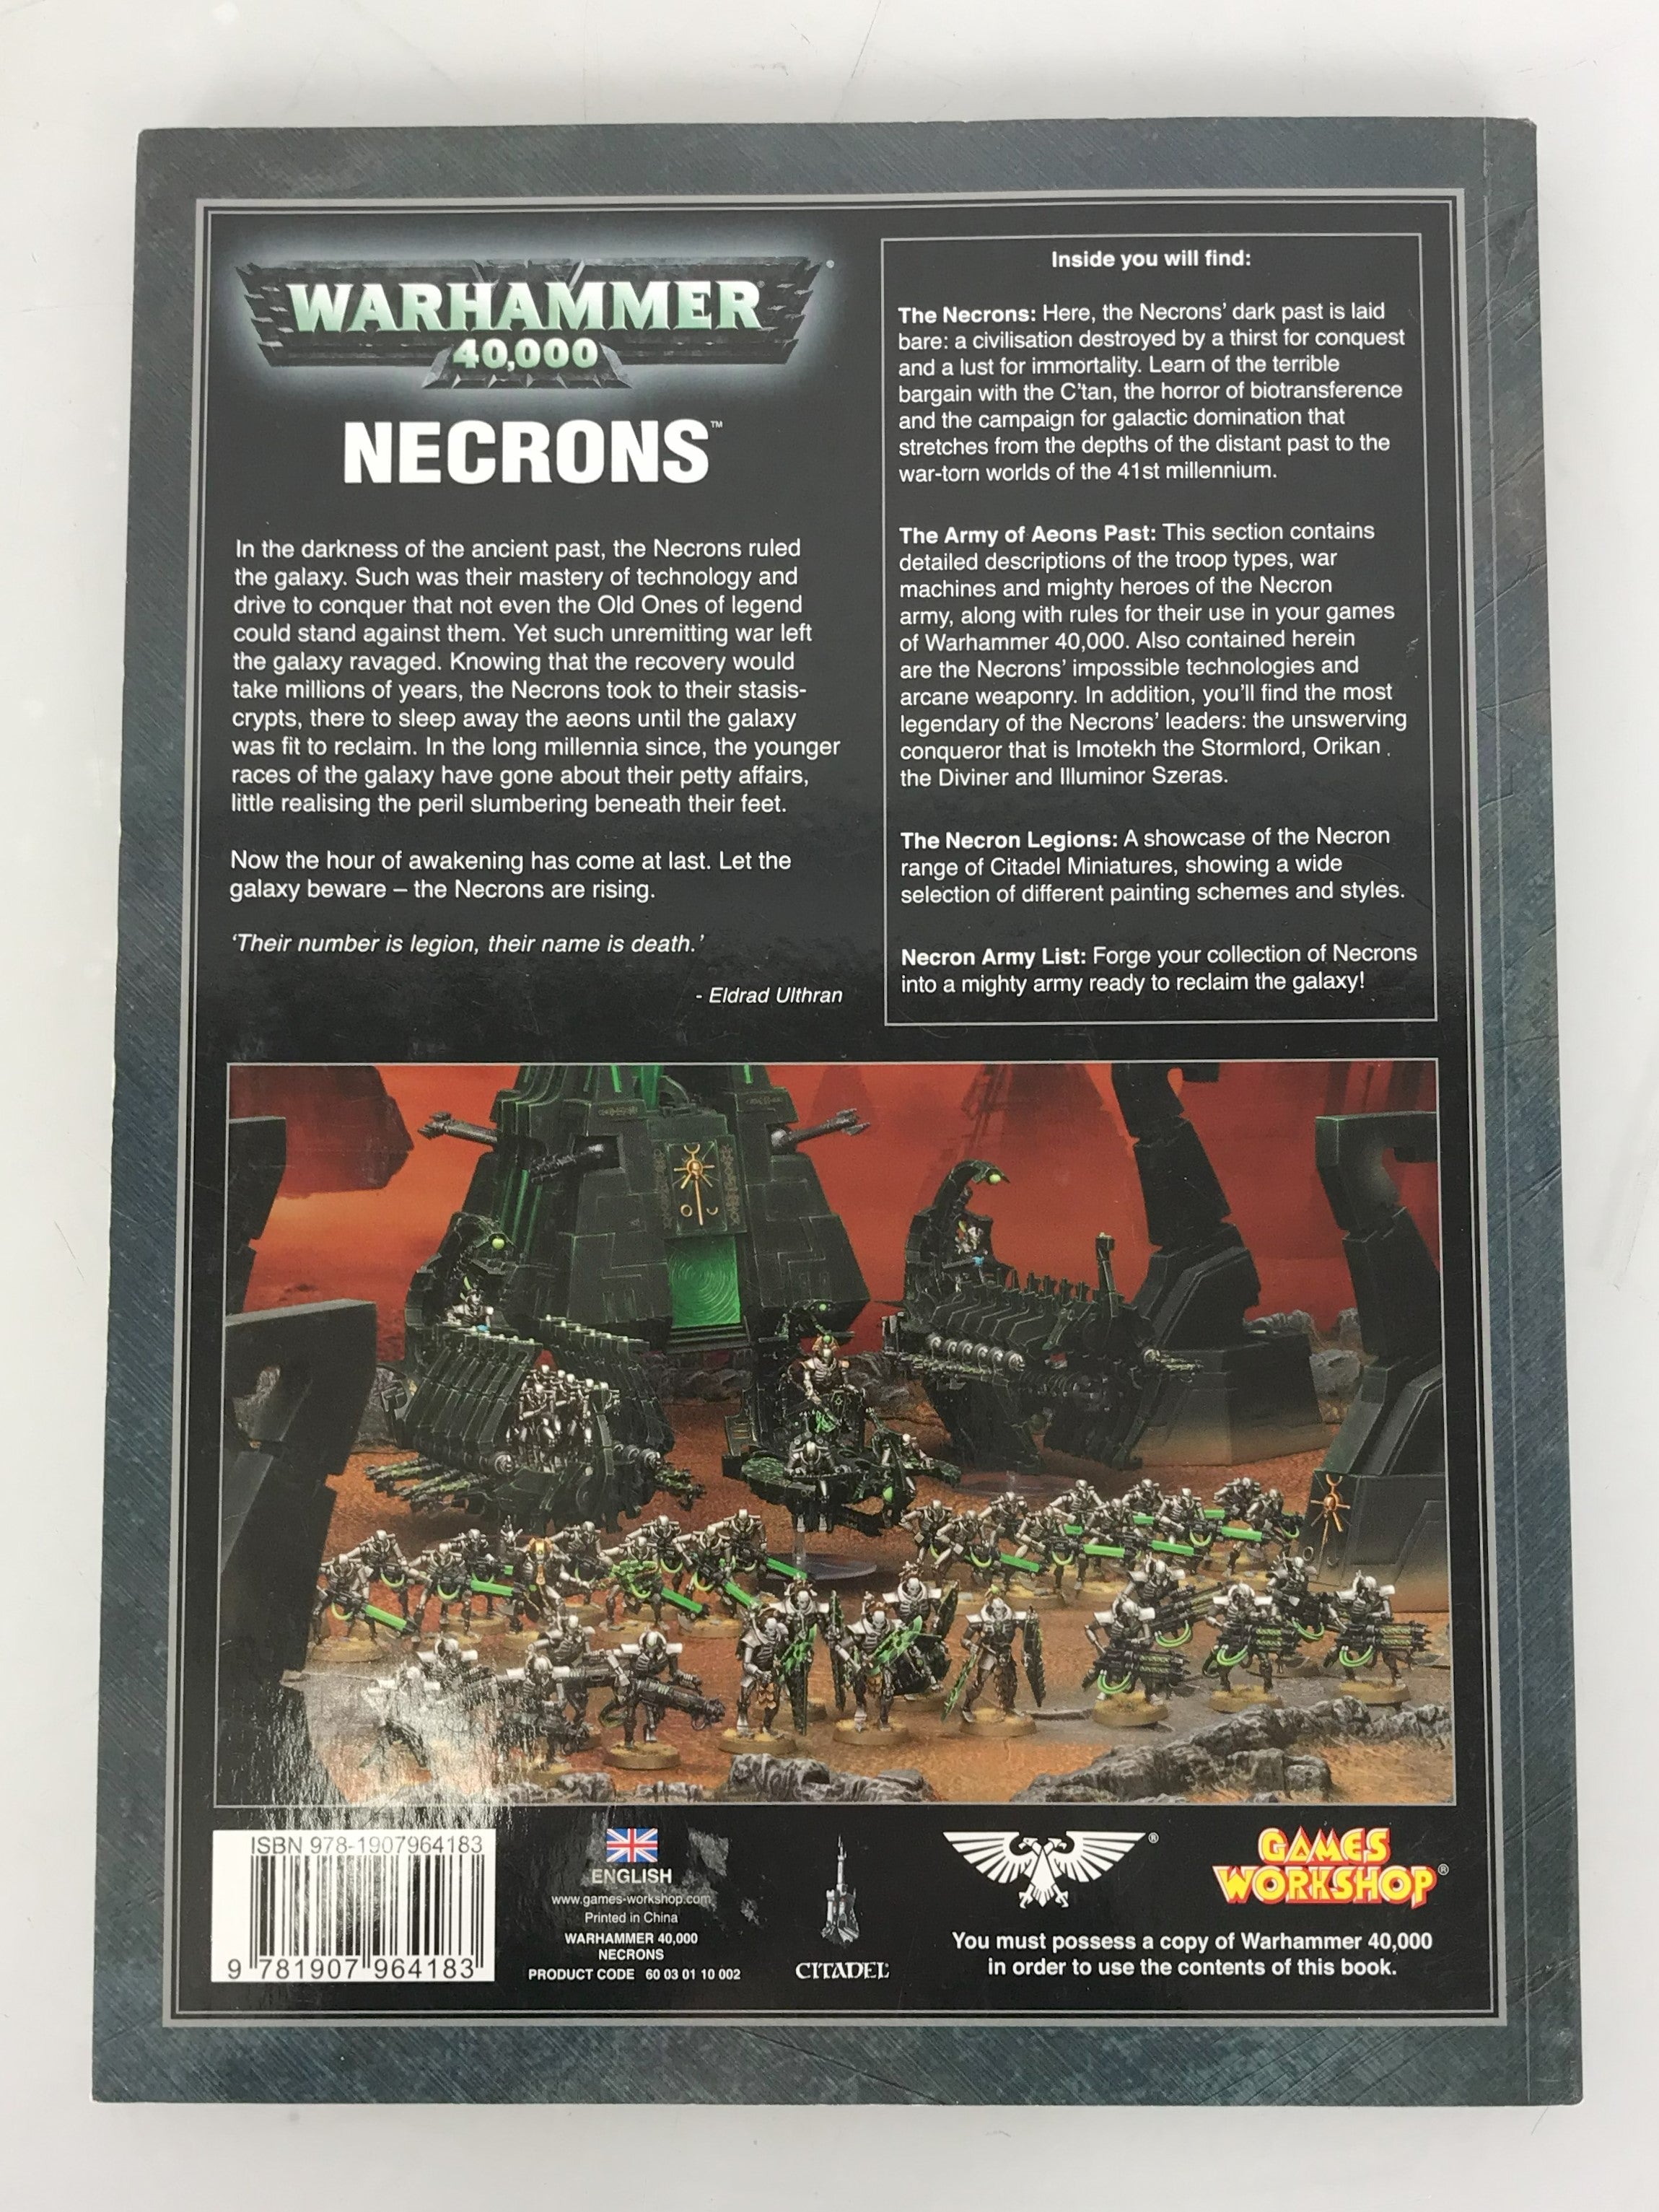 Warhammer 40,000 Codex Necrons 2011